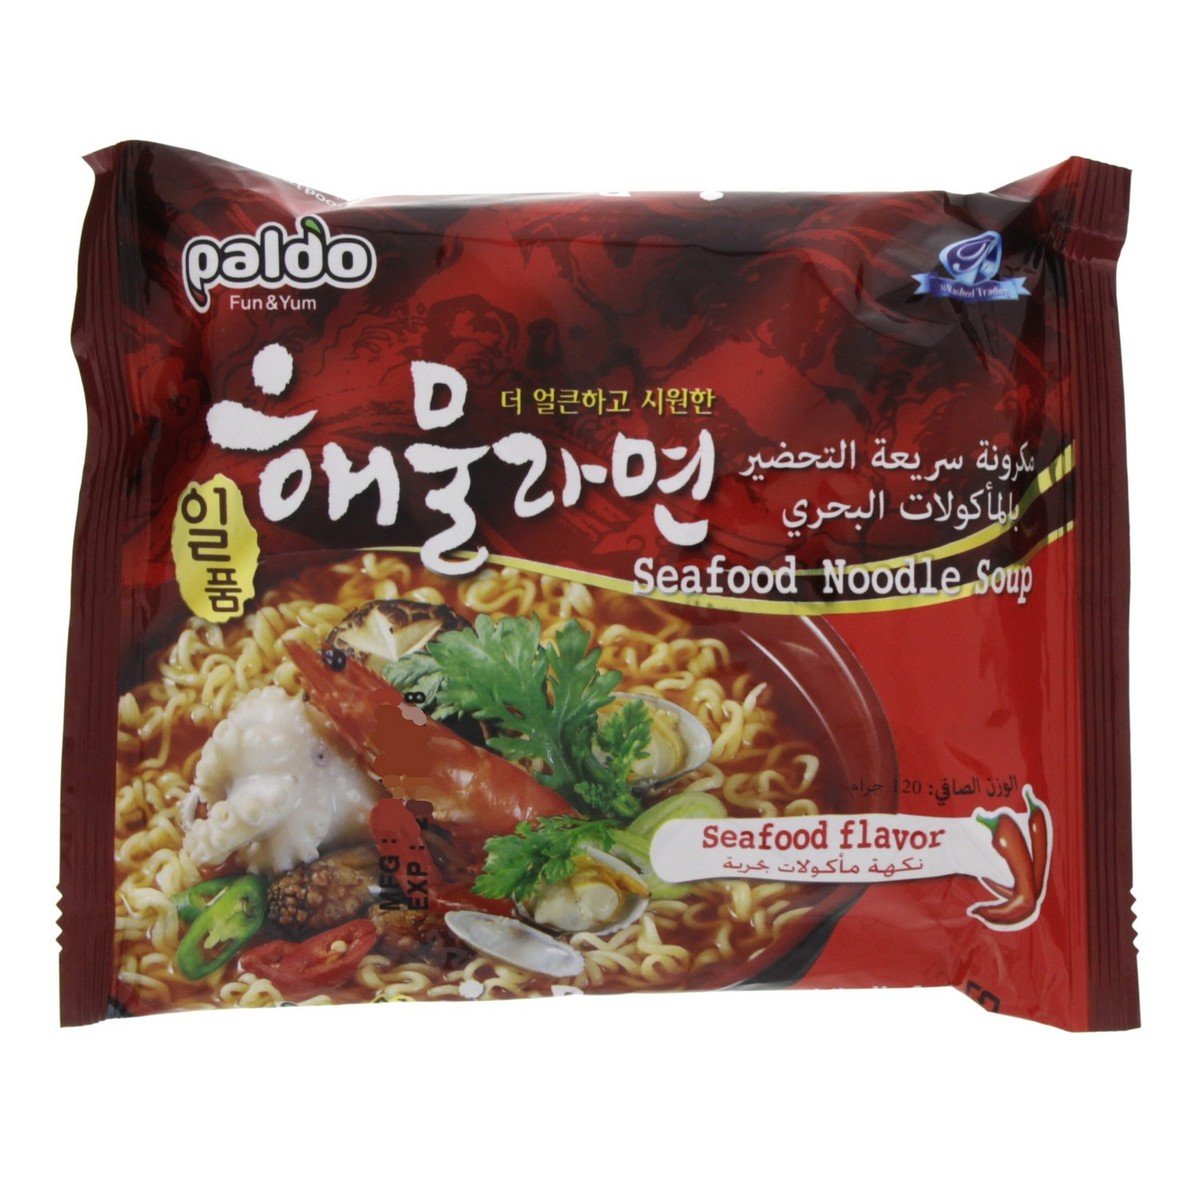 Paldo Seafood Noodles Soup 120 g